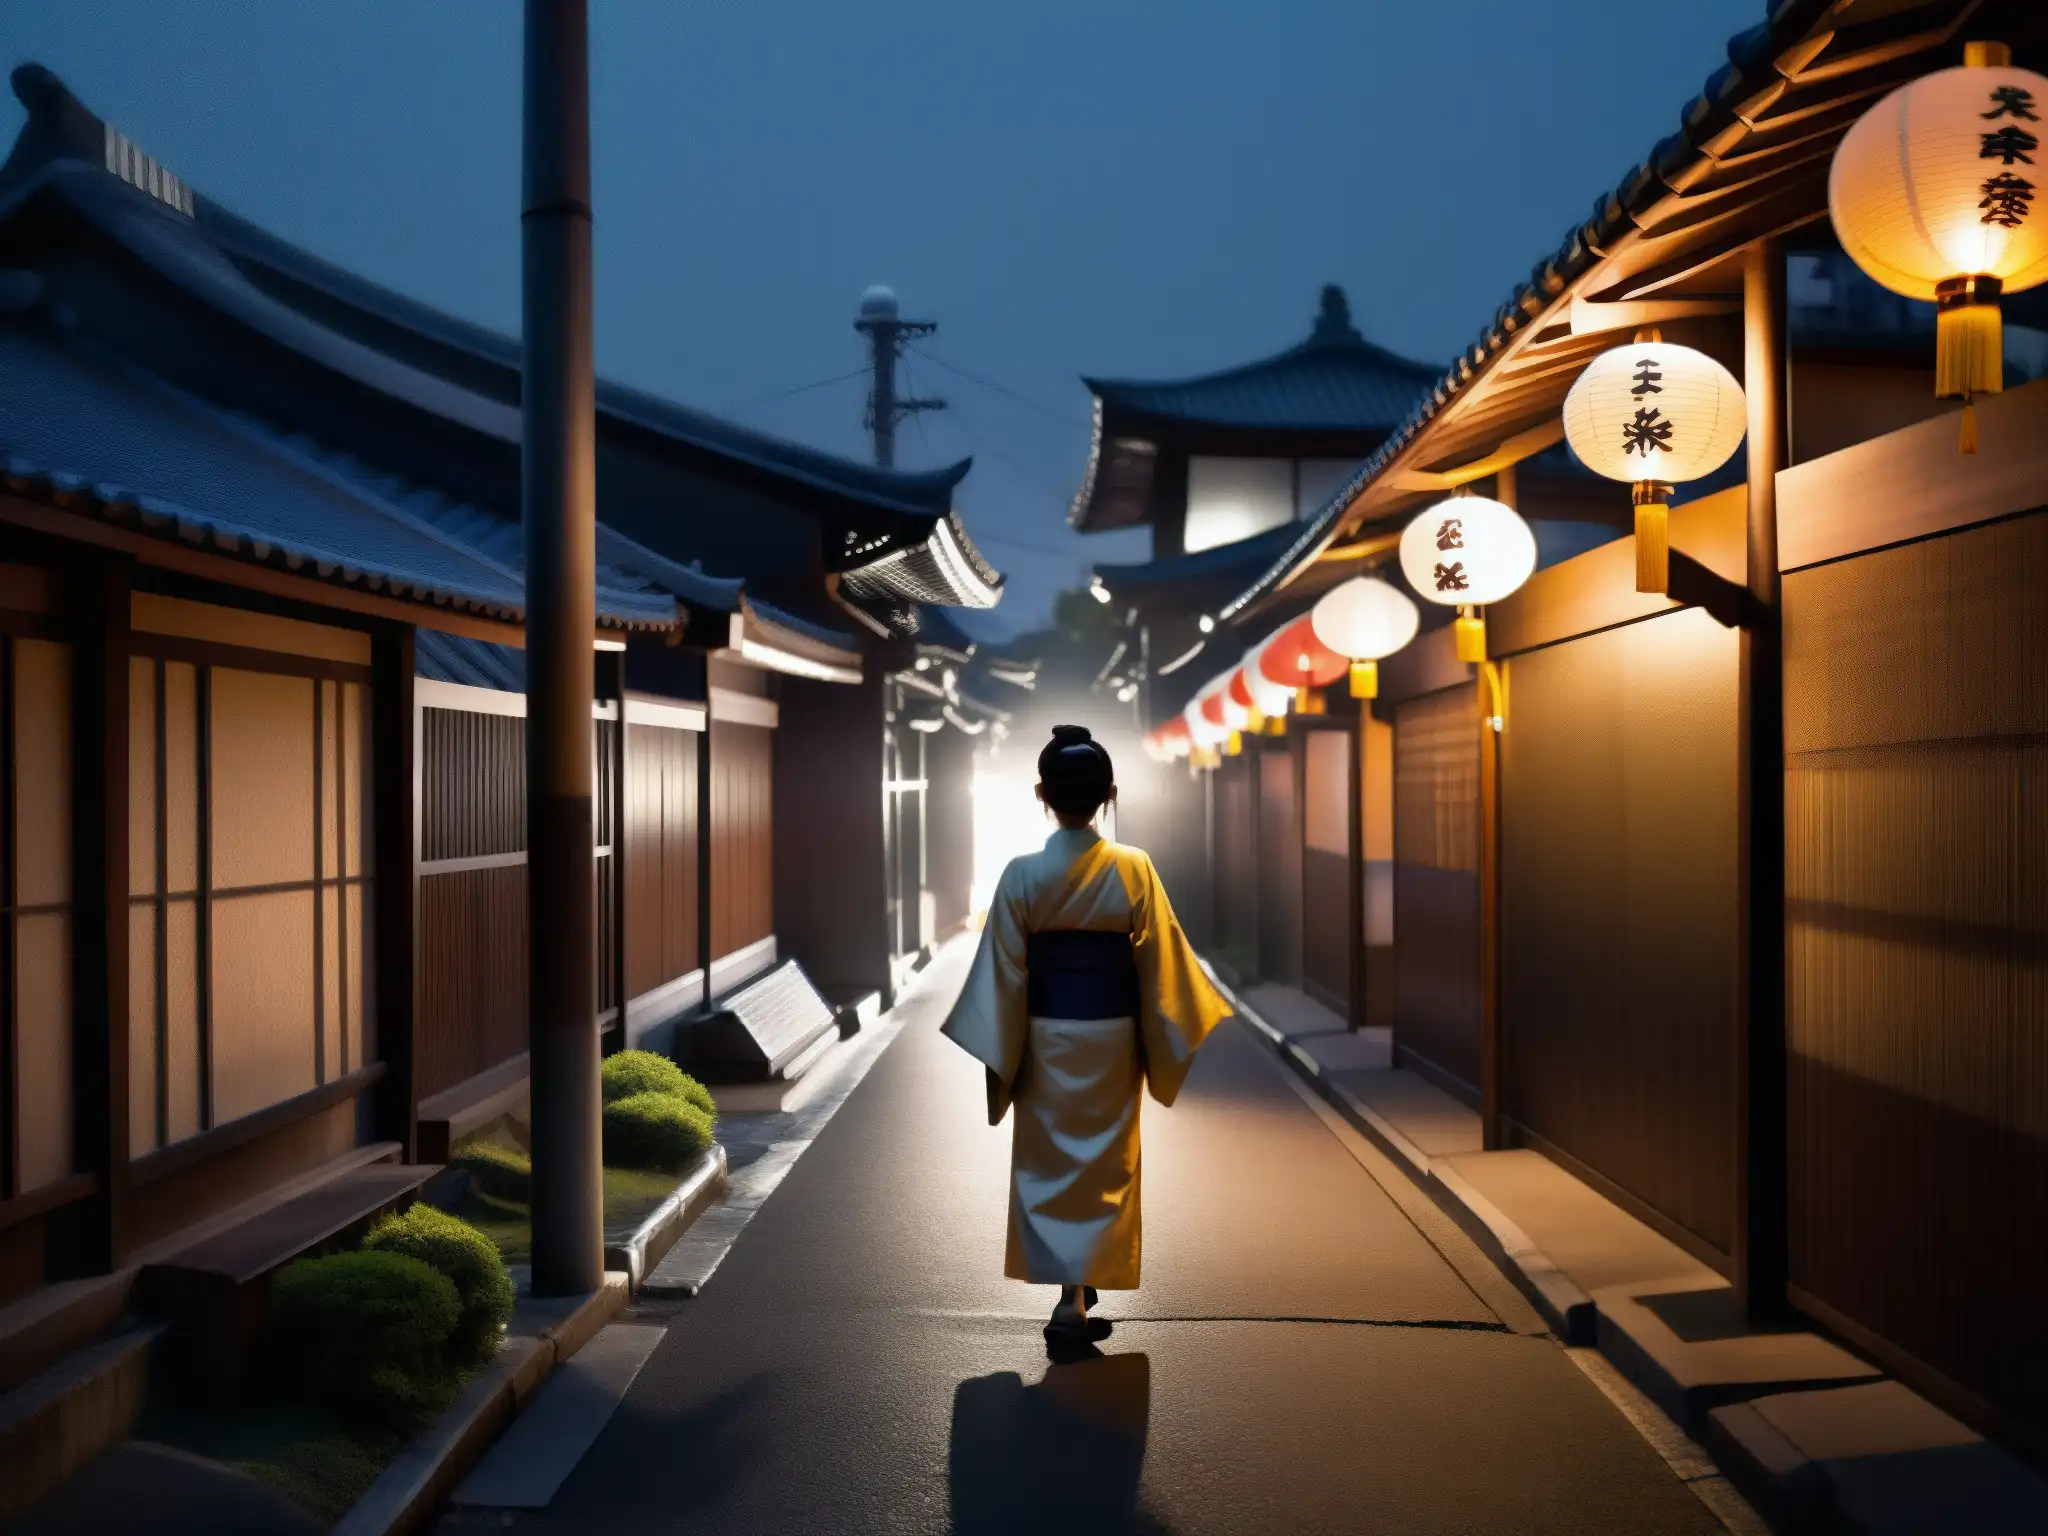 Un oscuro y misterioso callejón de una ciudad japonesa con faroles de papel, proyectando una luz sobrenatural